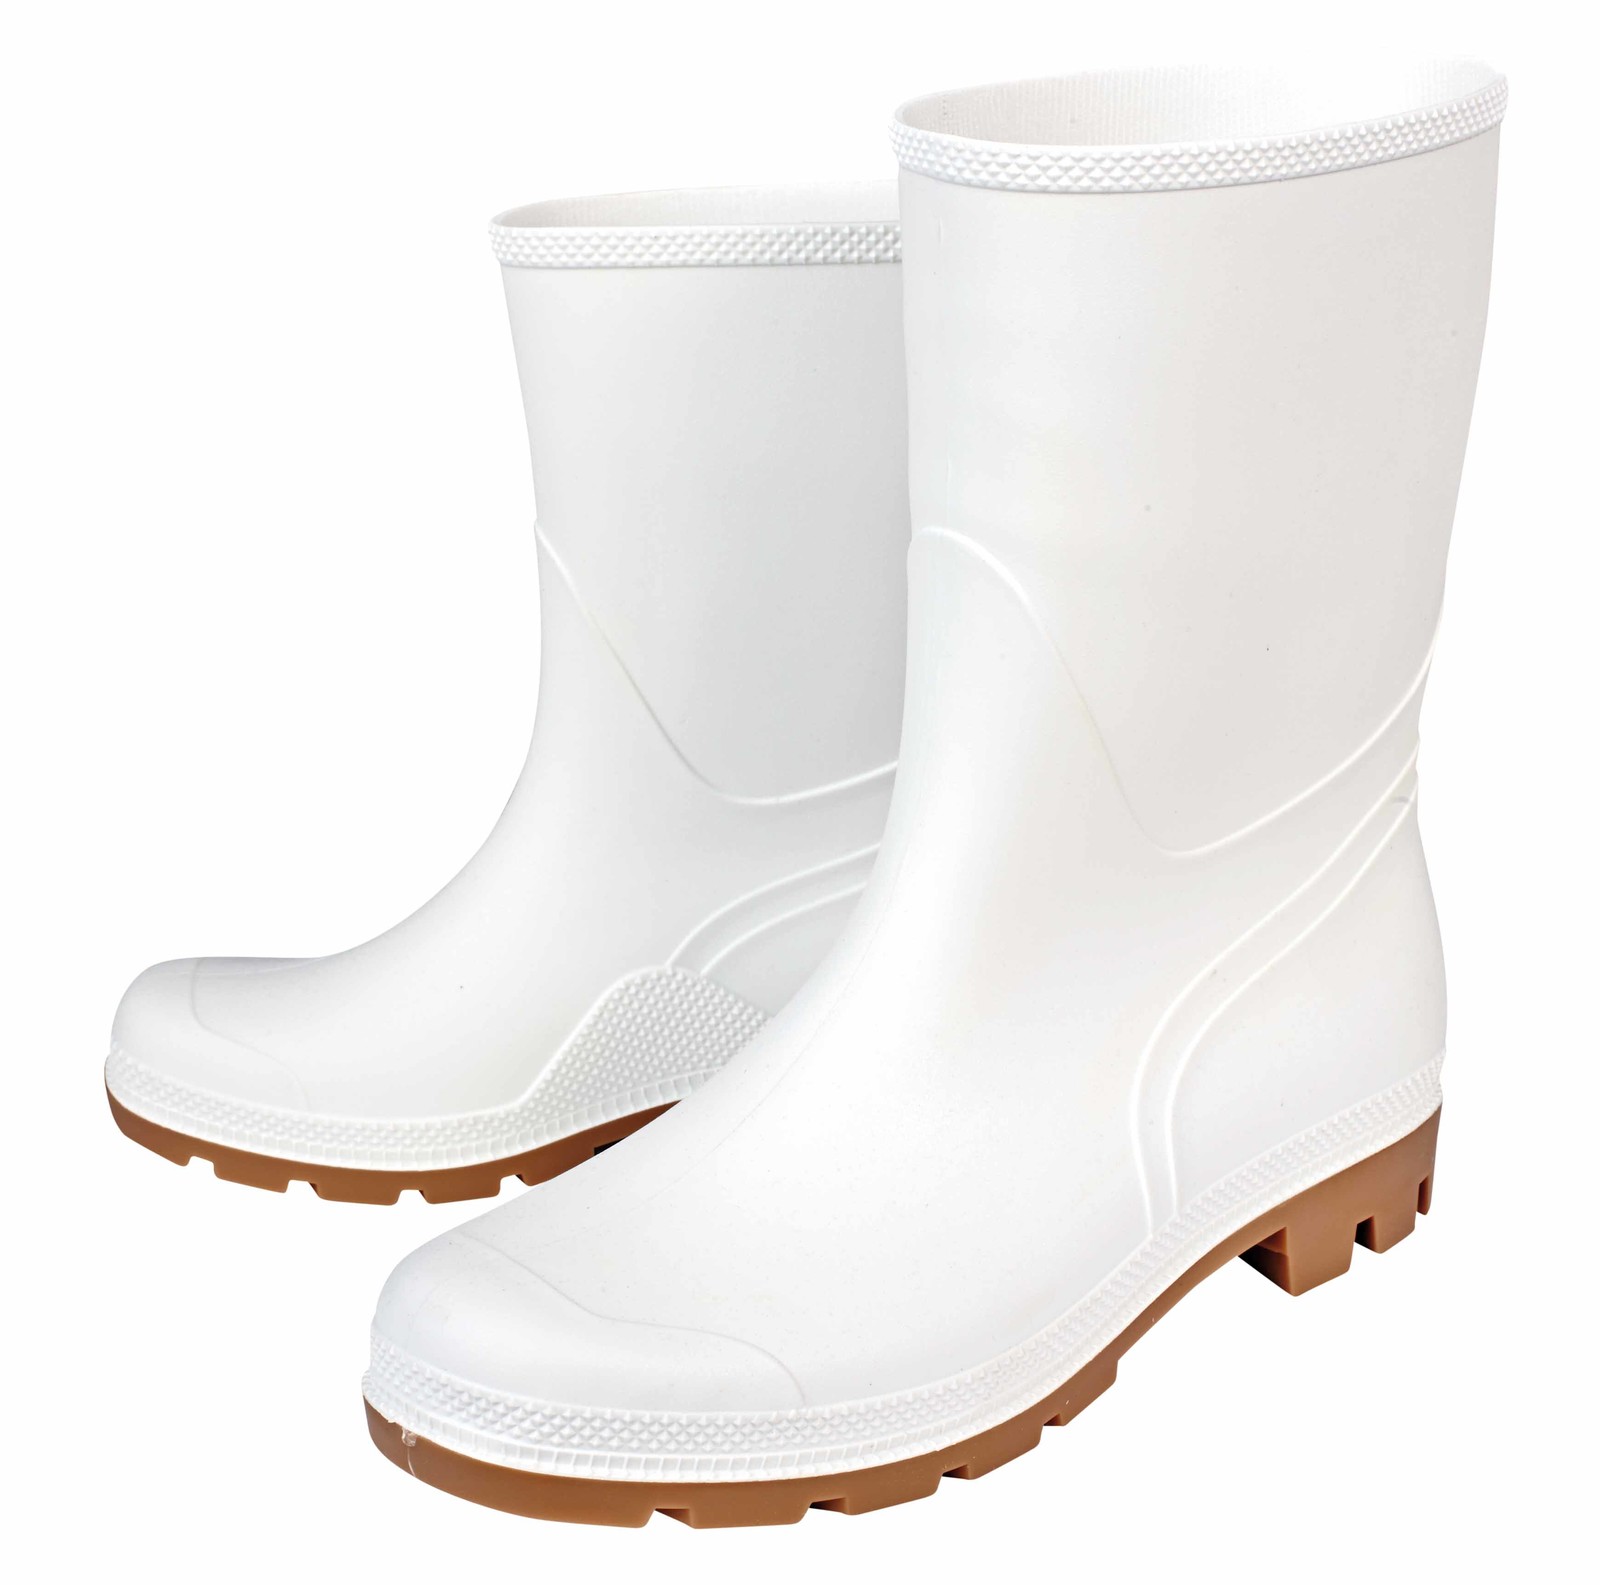 Gumáky Boots Troncheto PVC nízke - veľkosť: 46, farba: biela